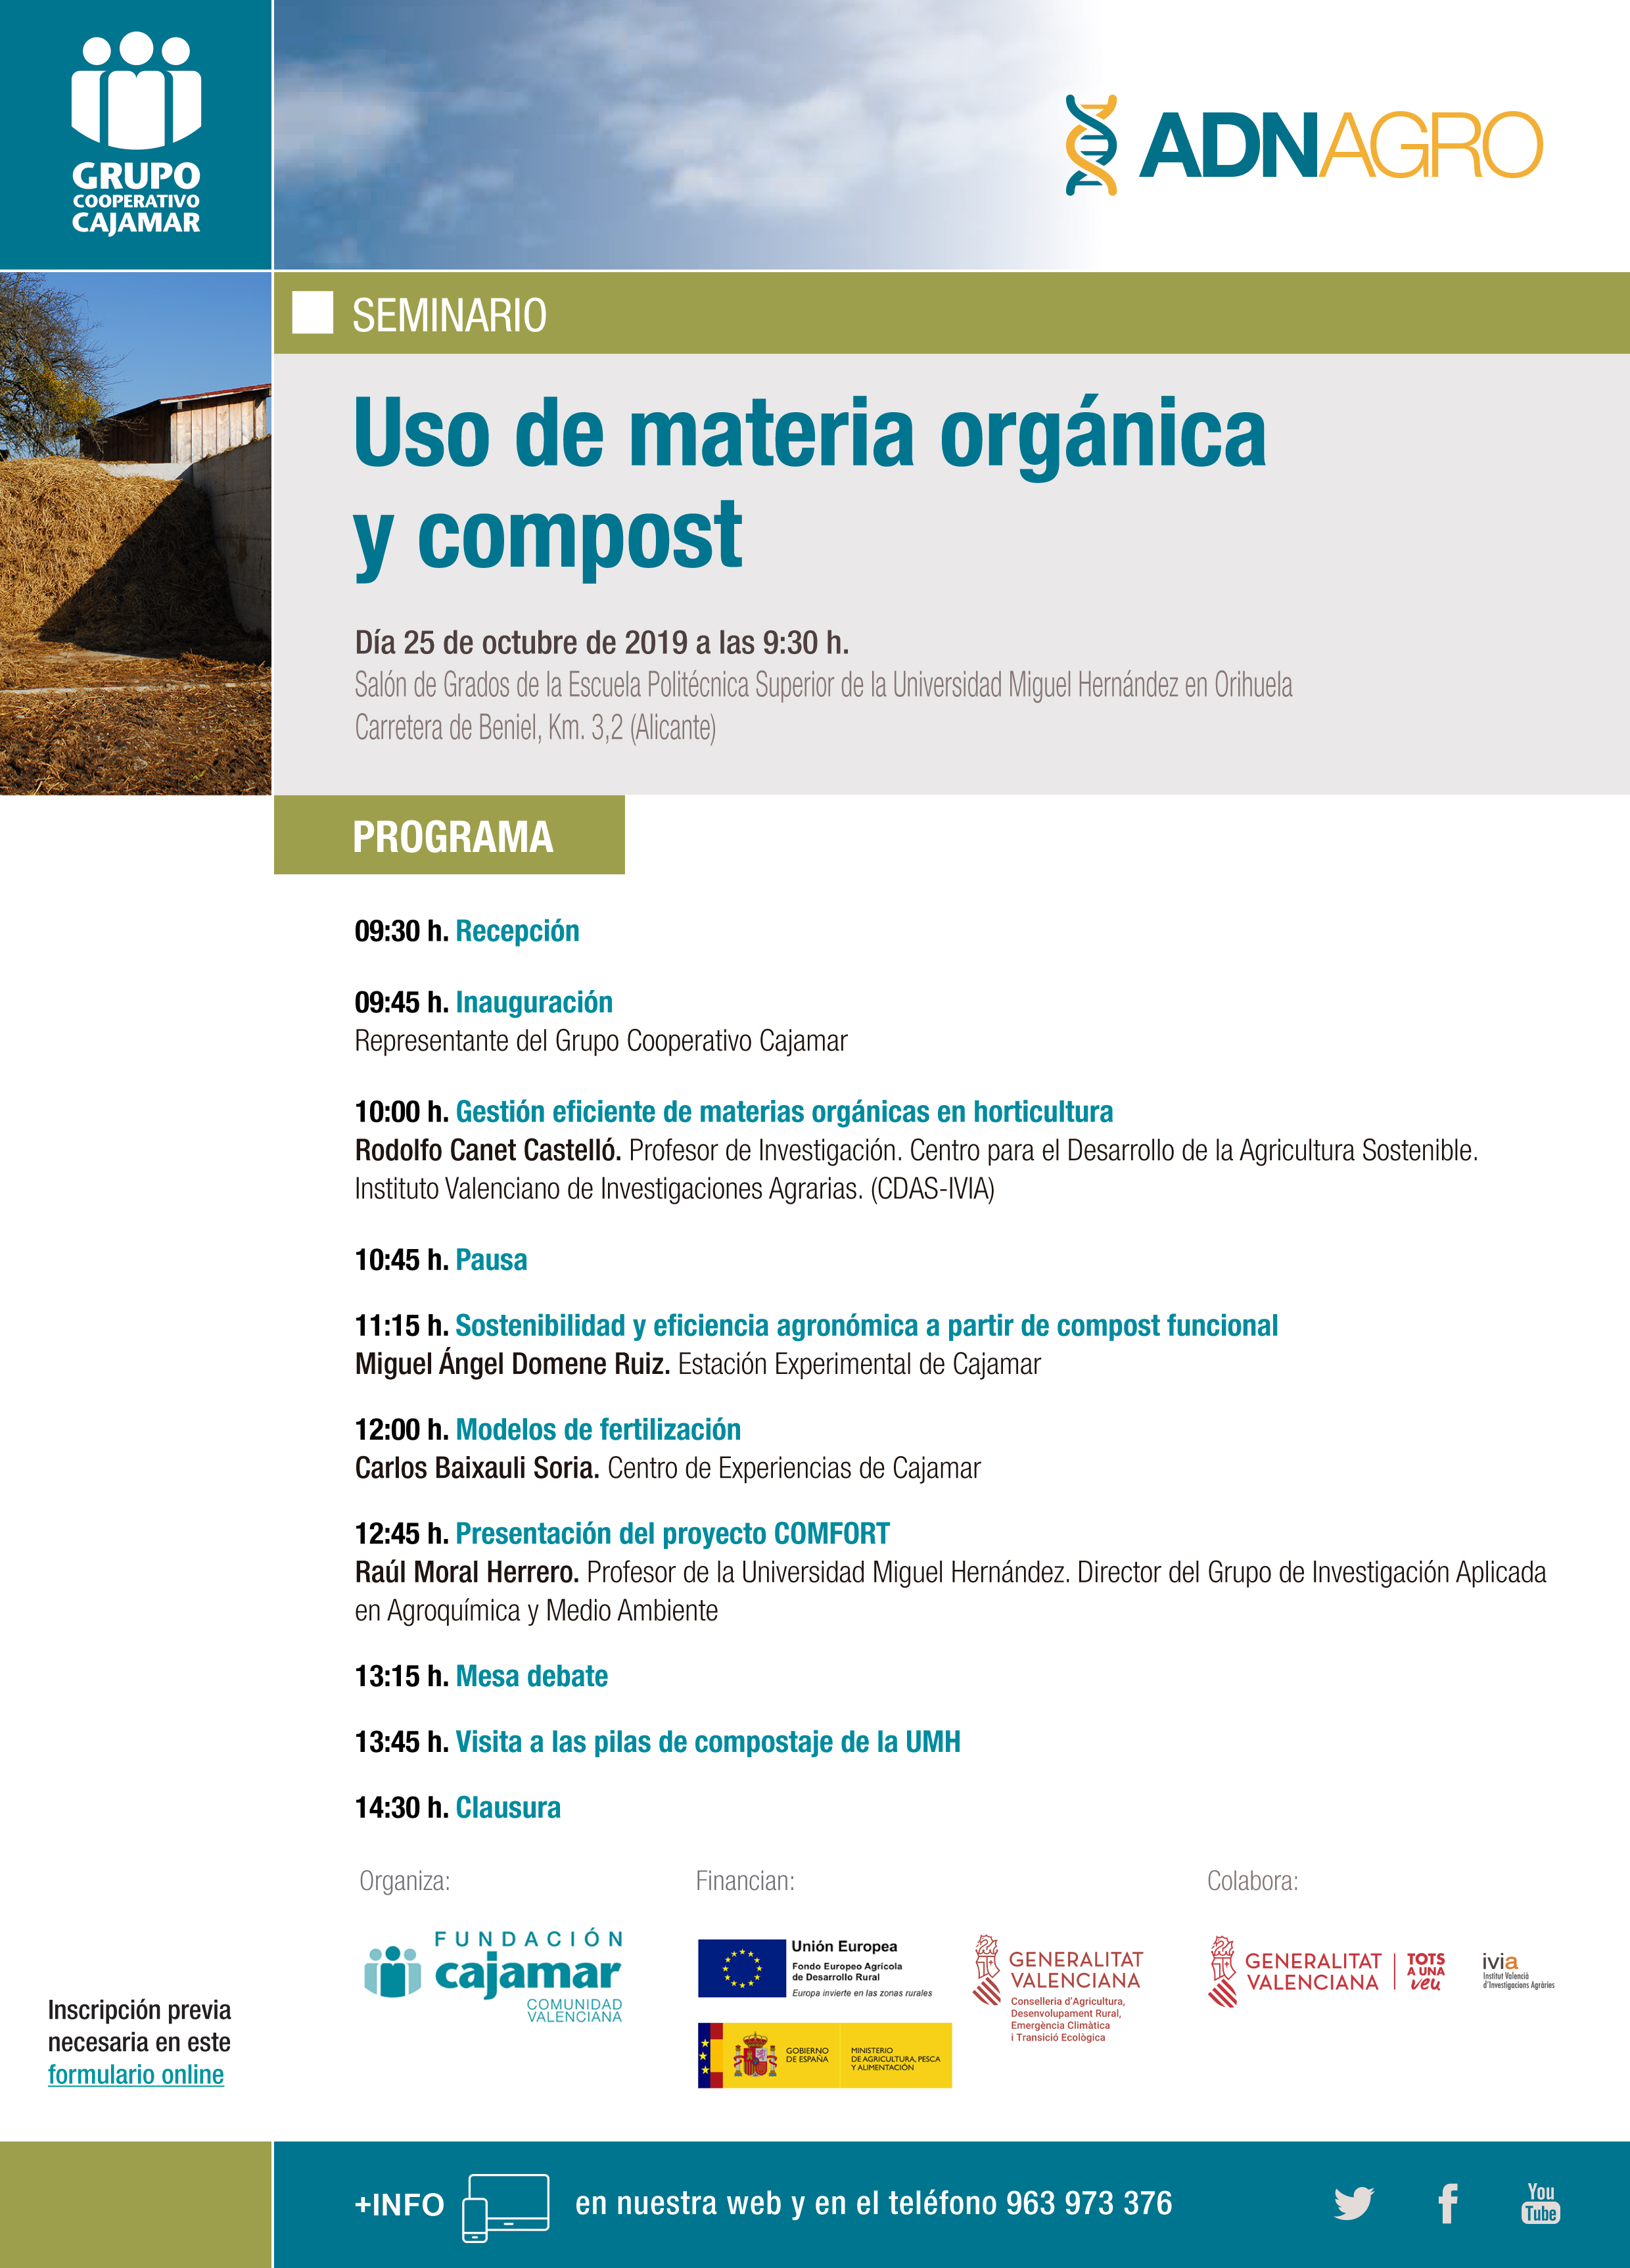 Seminario sobre el uso de materia orgánica y compost, con la Fundación Cajamar Comunidad Valenciana